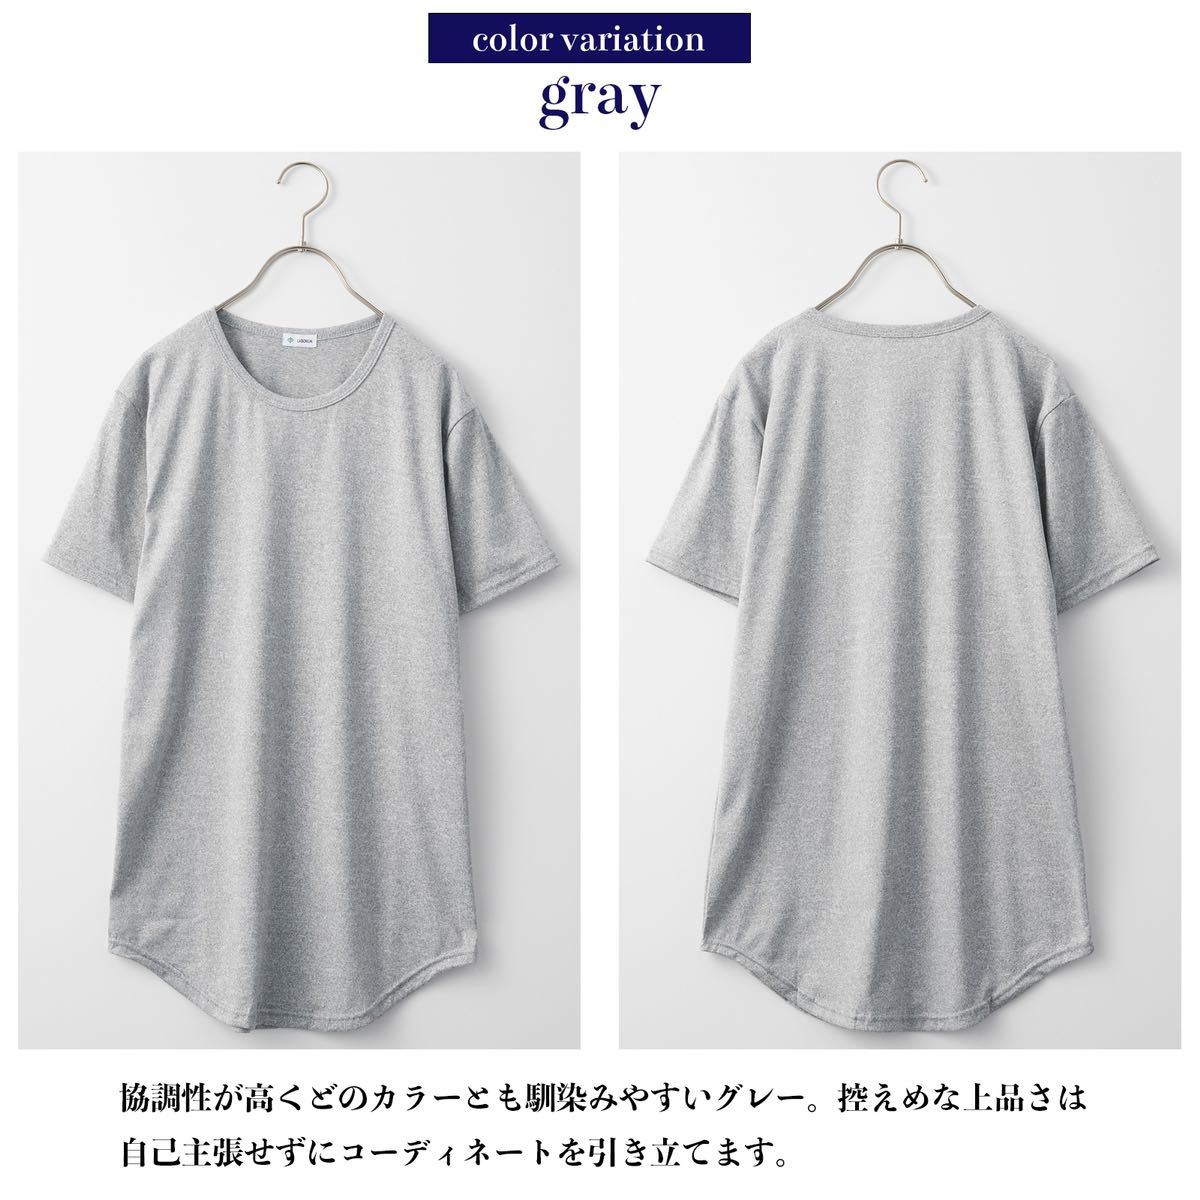 ロング丈 Tシャツ メンズ 半袖 ラウンド グレー 灰色 レイヤード XL 無地 重ね着 インナー カットソー